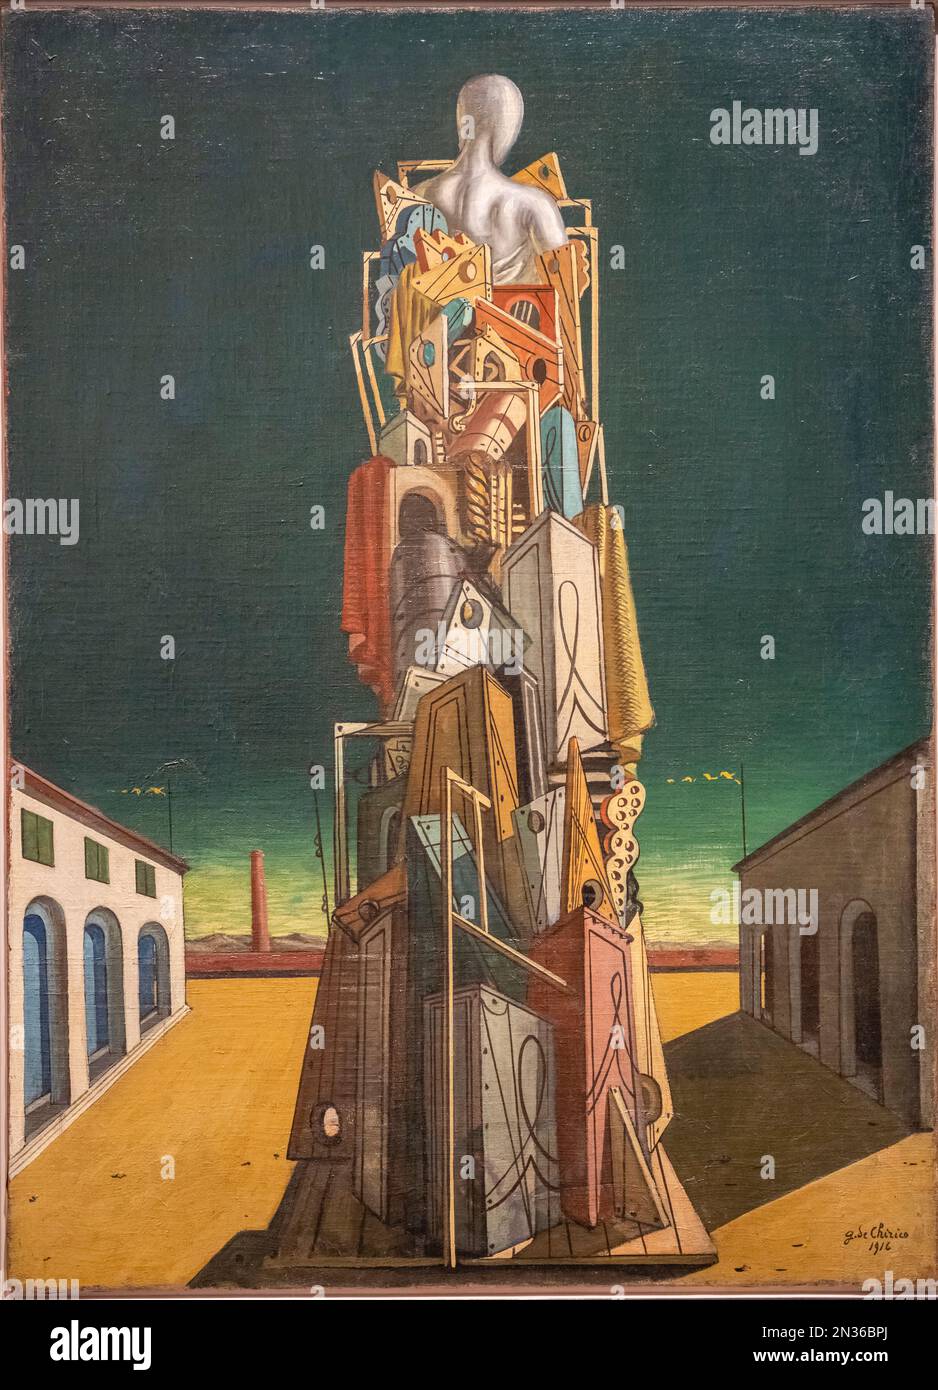 Le grand mataphysicien, 1945, Giorgio de Chirico, Nouvelle Galerie nationale, Berlin, République fédérale d'Allemagne Banque D'Images